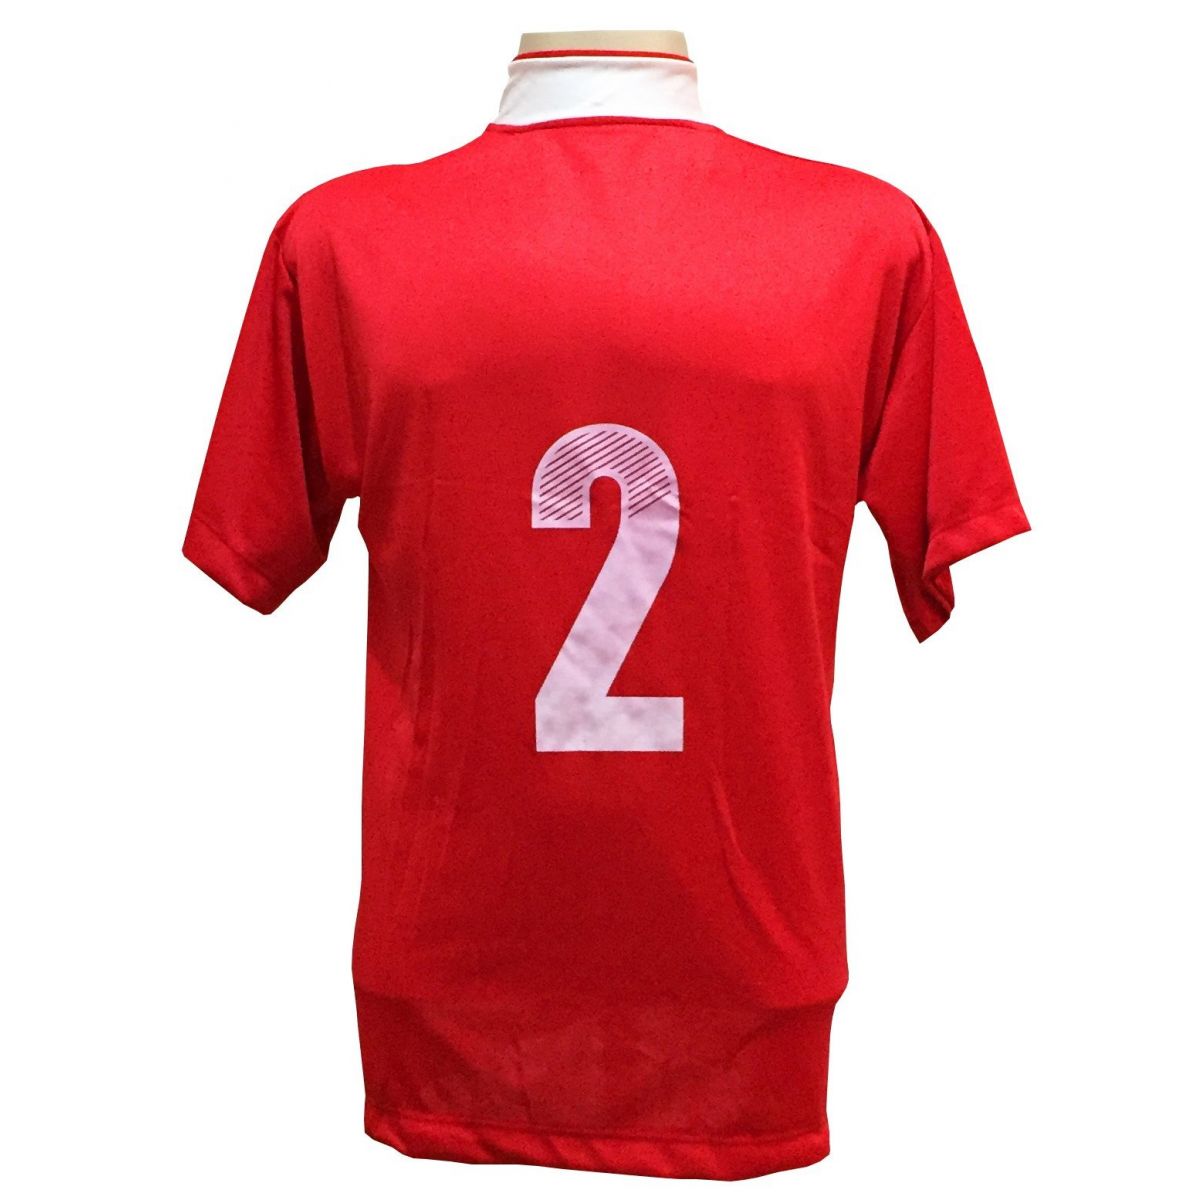 Uniforme Esportivo Completo Modelo Suécia 14+1 (14 Camisas Vermelho/Branco + 14 Calções Modelo Copa Vermelho/Branco + 14 Pares de Meiões Brancos + 1 Conjunto de Goleiro) + Brindes